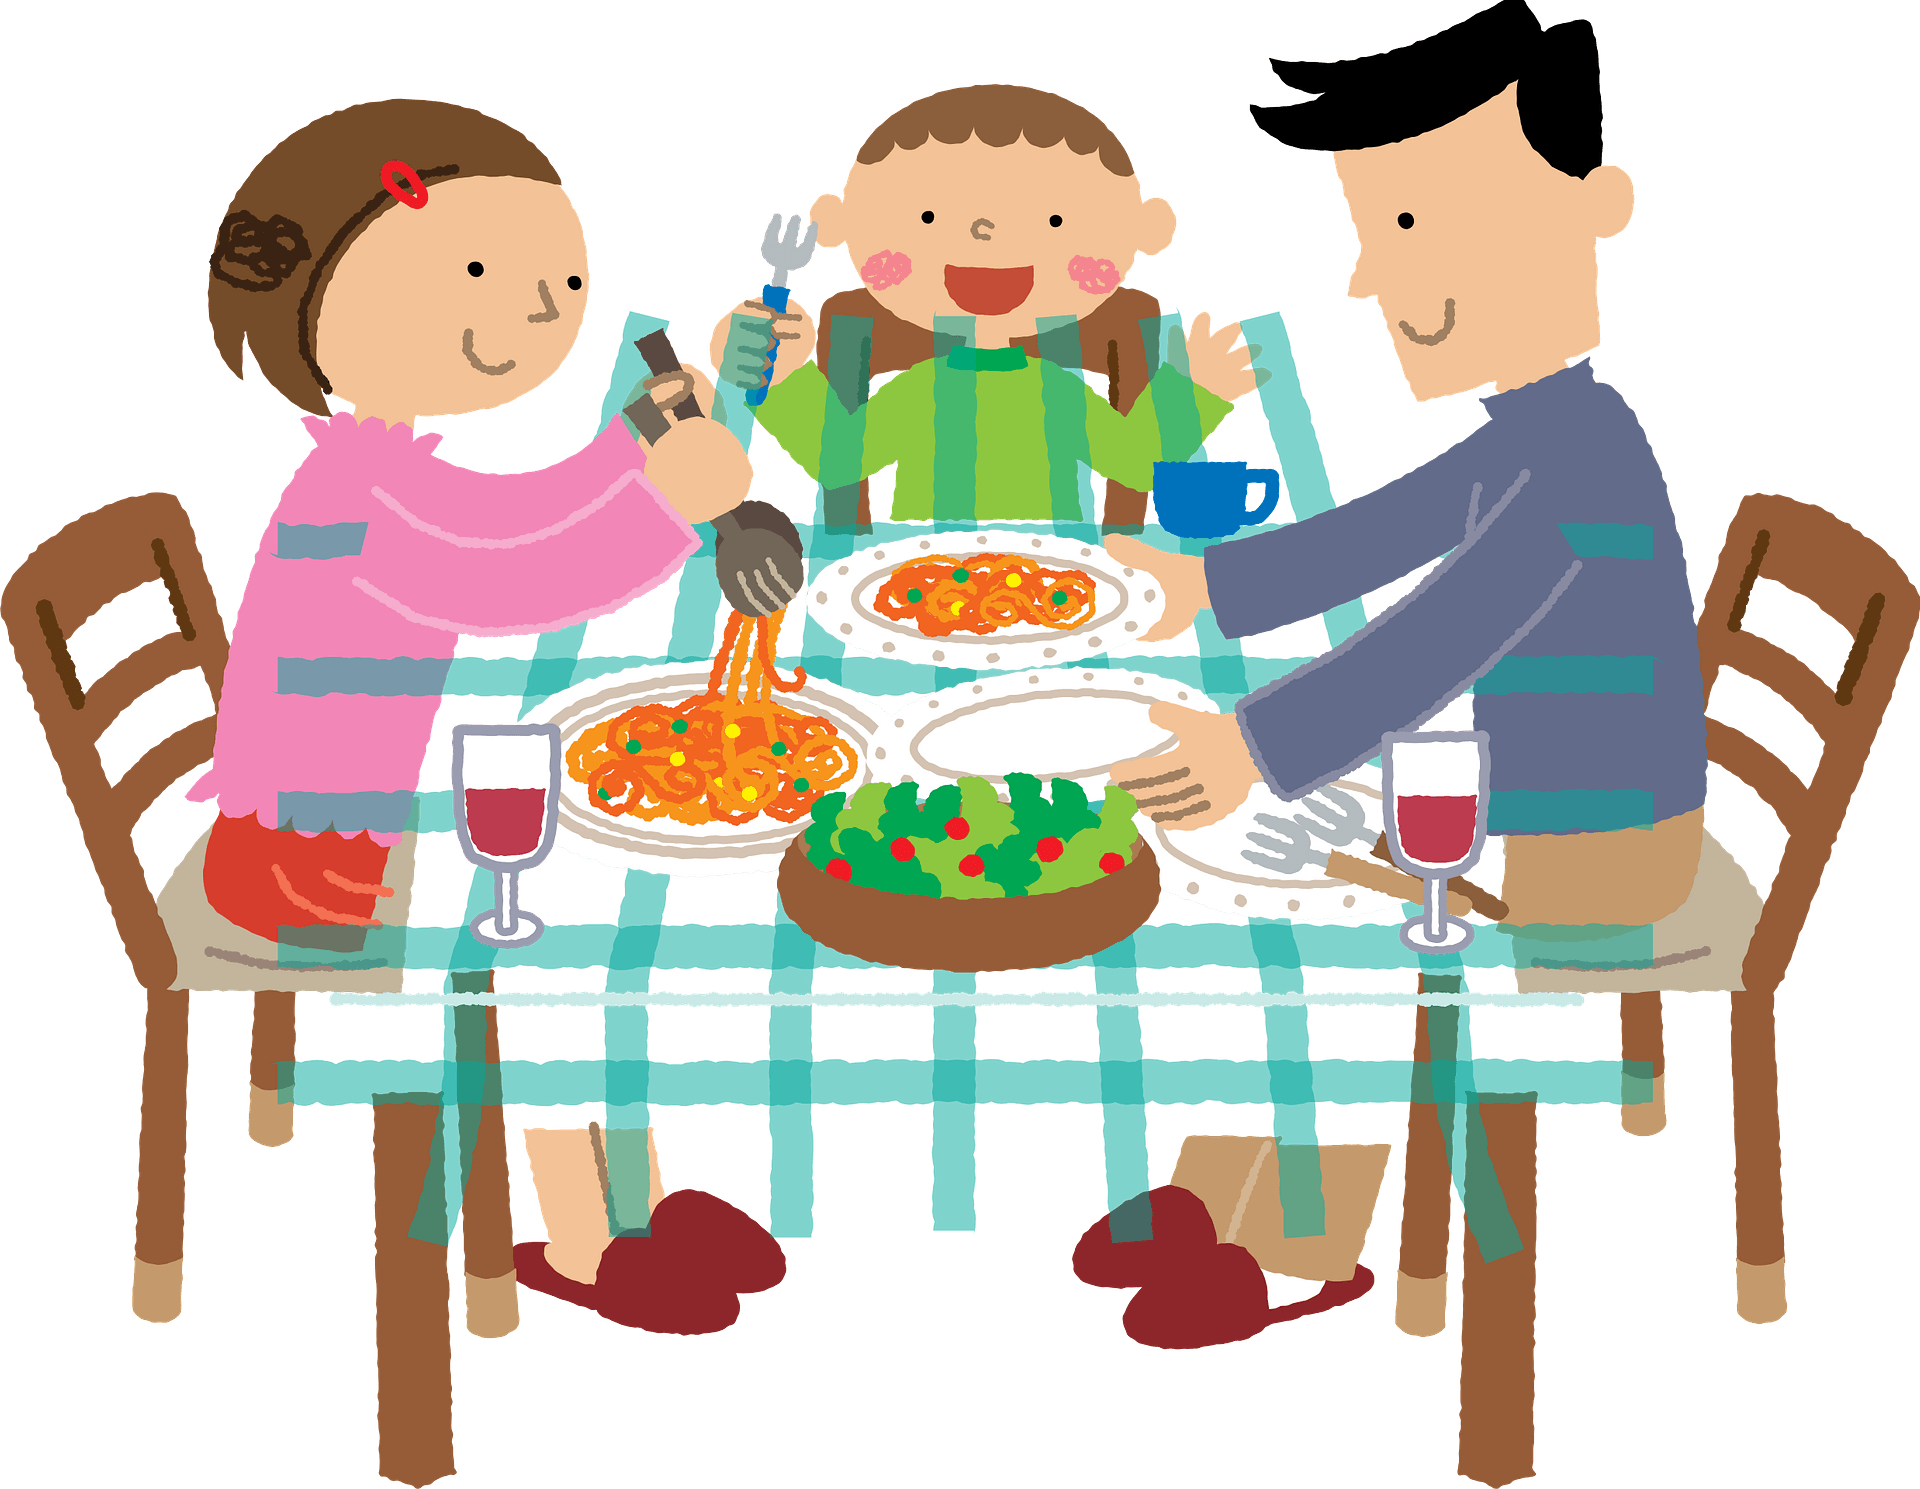 We had dinner. Ужин рисунок. Семья за обеденным столом на белом фоне. Ужин иллюстрация. Уж для детей на прозрачном фоне.